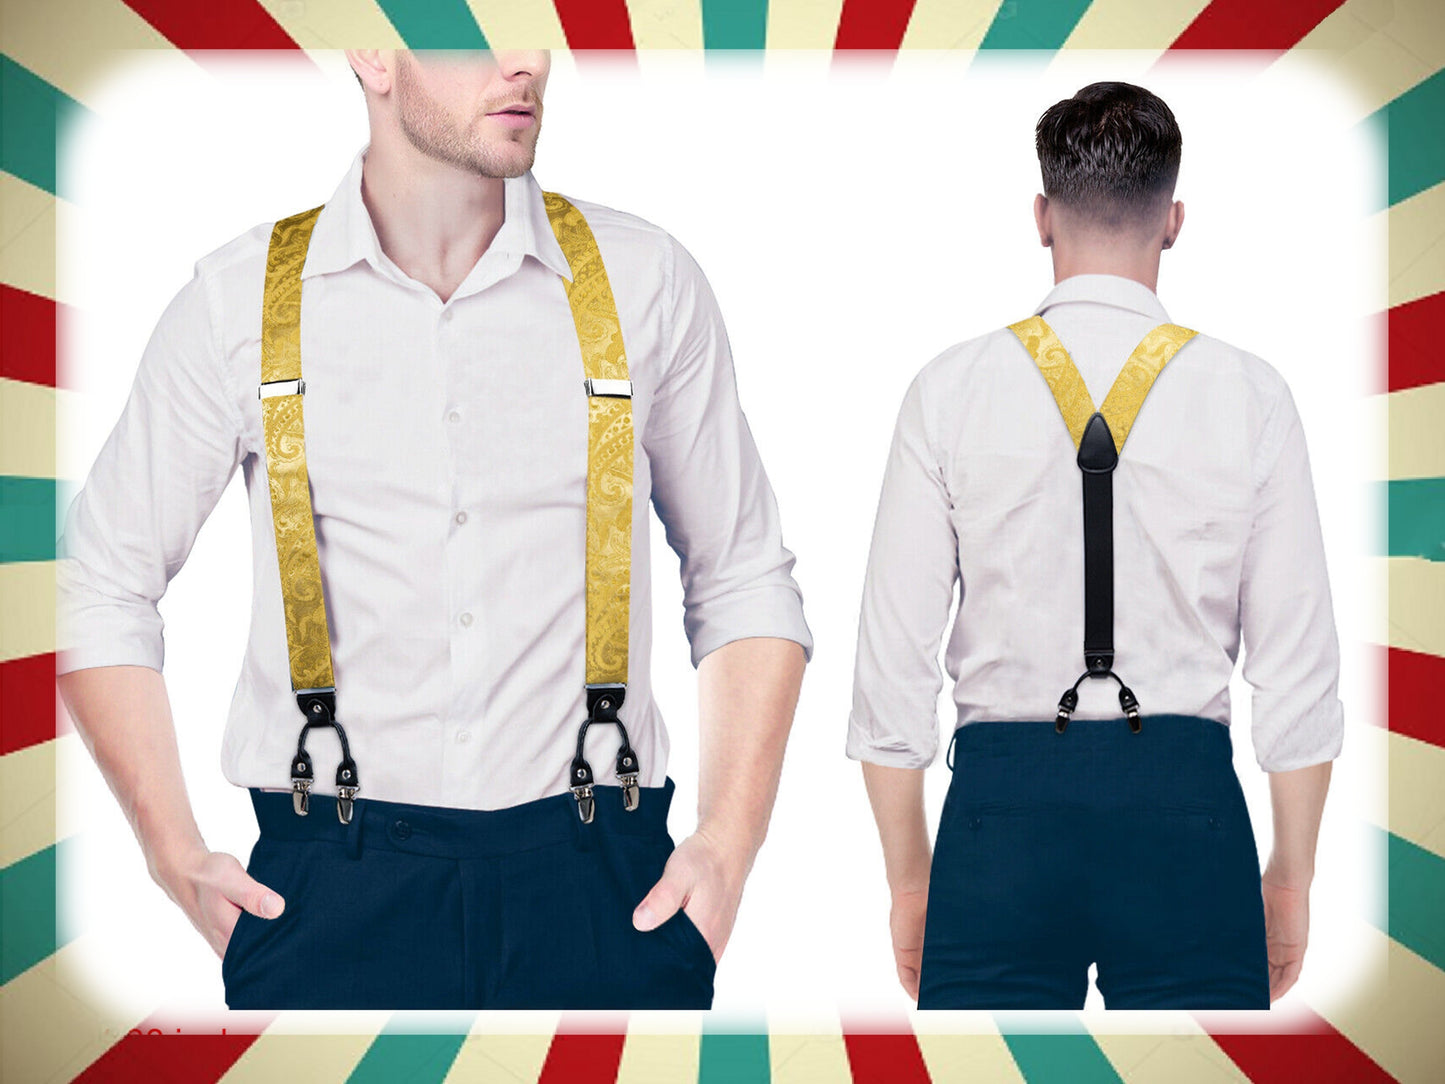 BD4024 Men's Braces Designer Clip Suspender Set [Paisley Damask Gold]